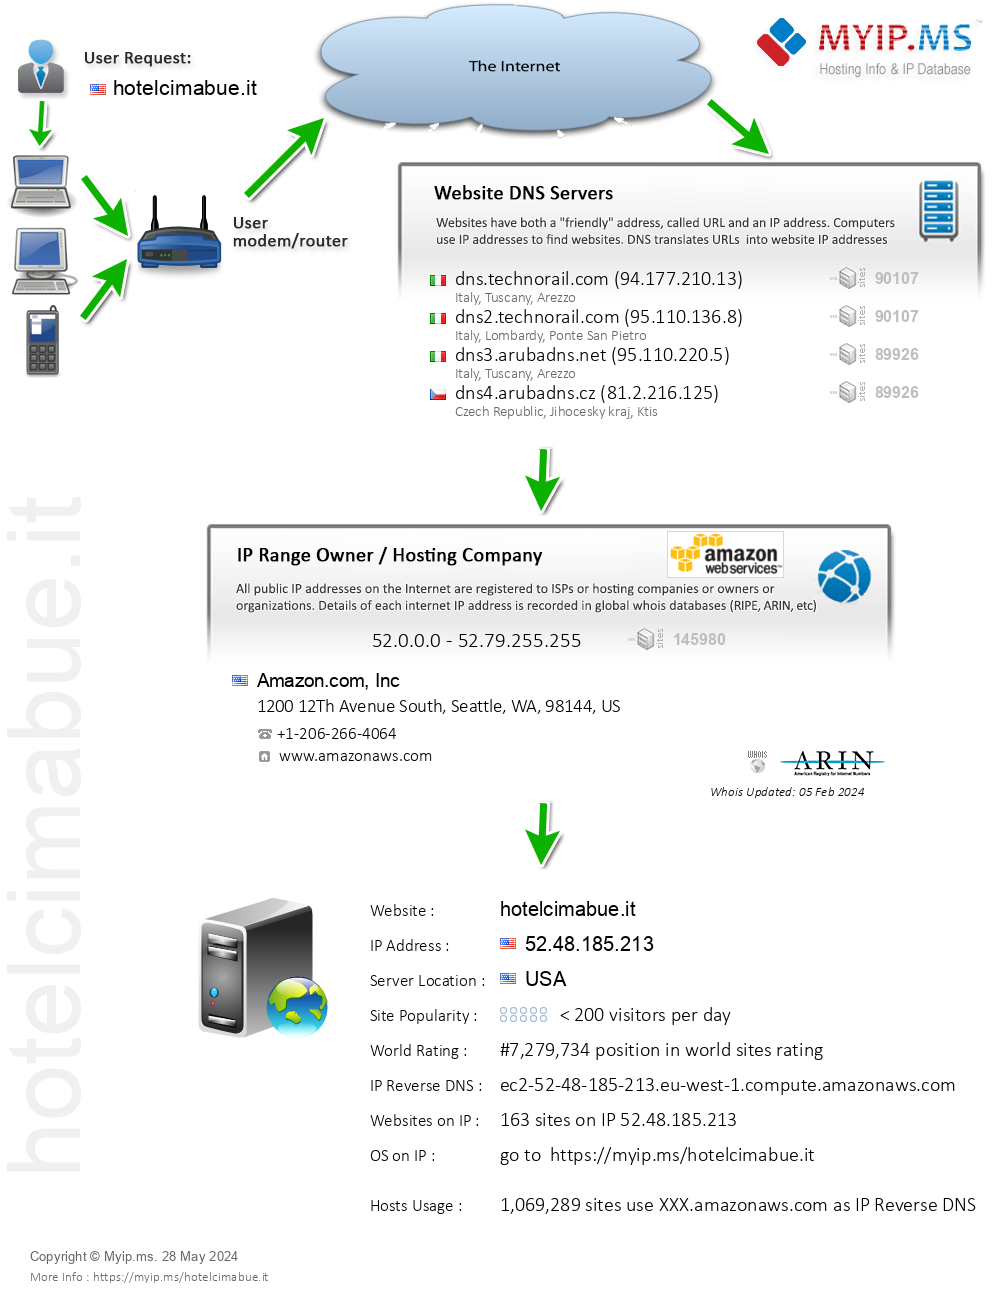 Hotelcimabue.it - Website Hosting Visual IP Diagram